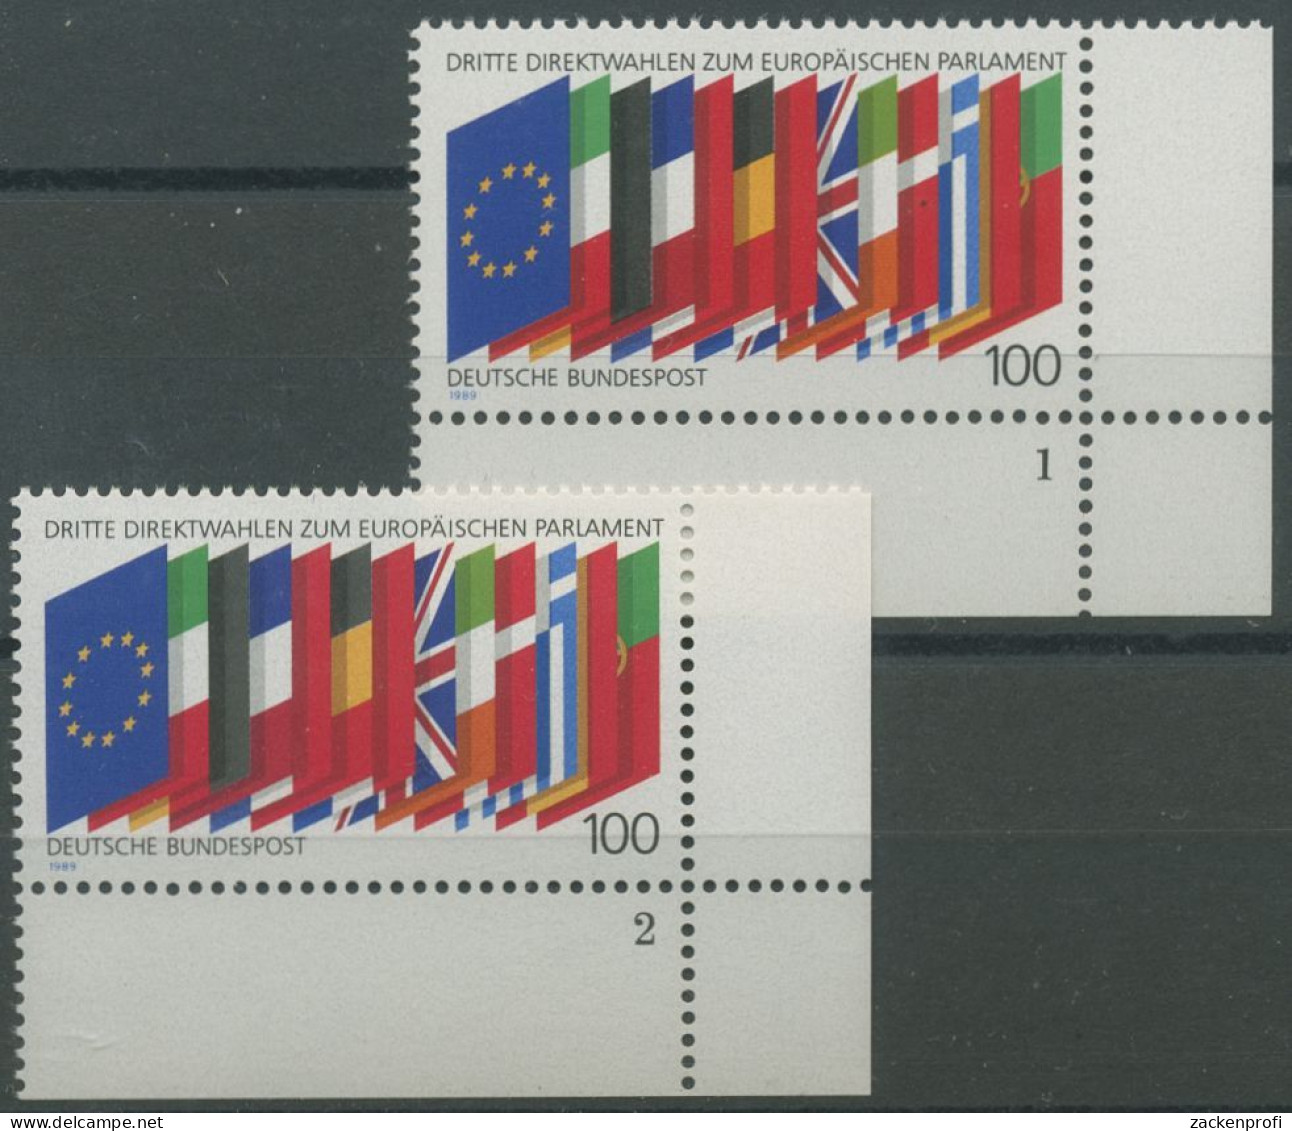 Bund 1989 Direktwahlen Zum Europ. Parlament 1416 Ecke 4 FN 1,2 Postfrisch (E657) - Neufs